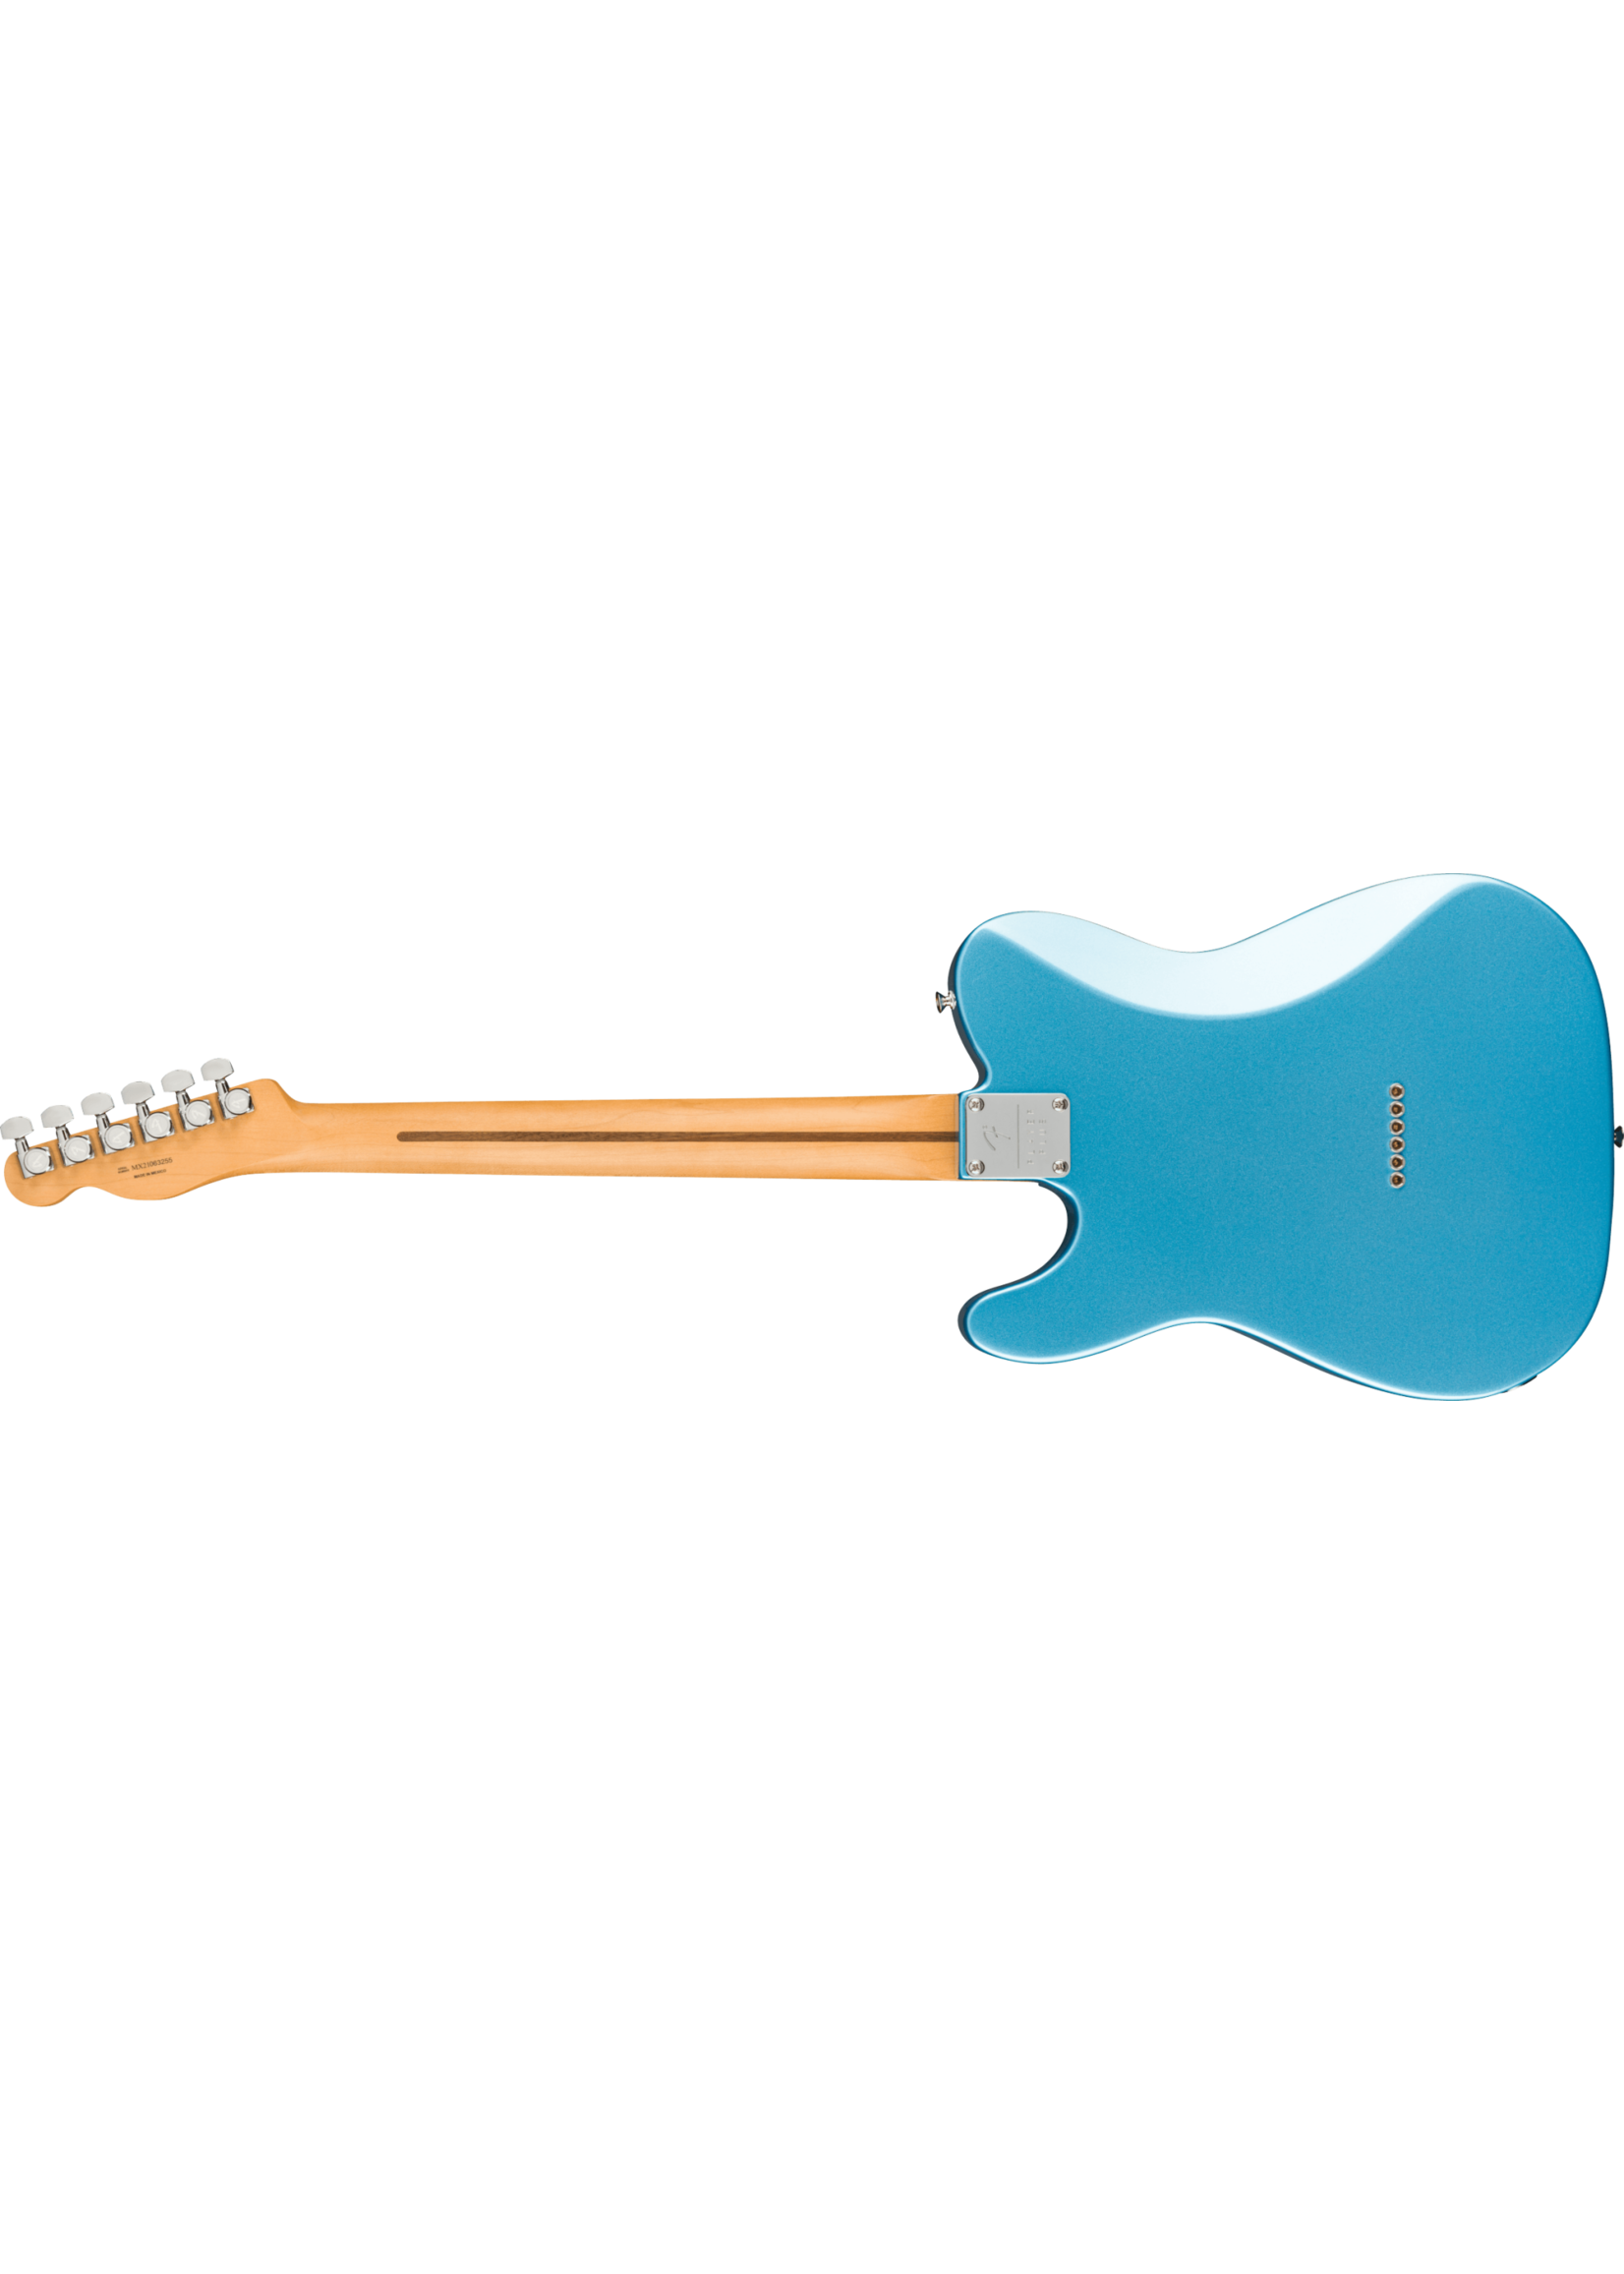 Fender Fender Player Plus Nashville Telecaster